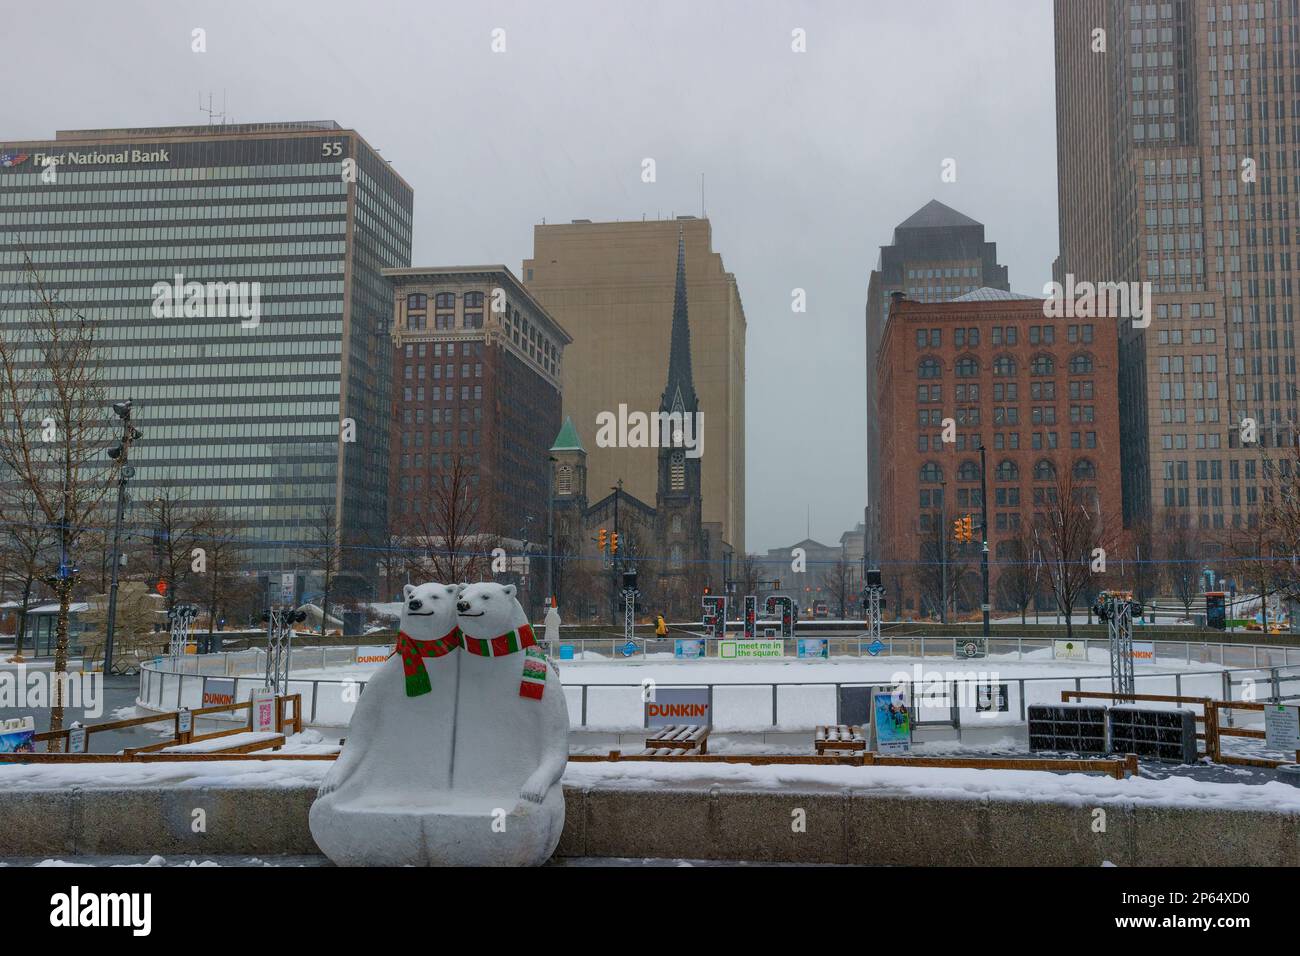 Cleveland, Ohio, USA - 25. Januar 2023: Nasser Schnee fällt über der öffentlichen Squiare in der Innenstadt, wo sich eine geschlossene Eislaufbahn mit festlichen Eisbären befindet Stockfoto